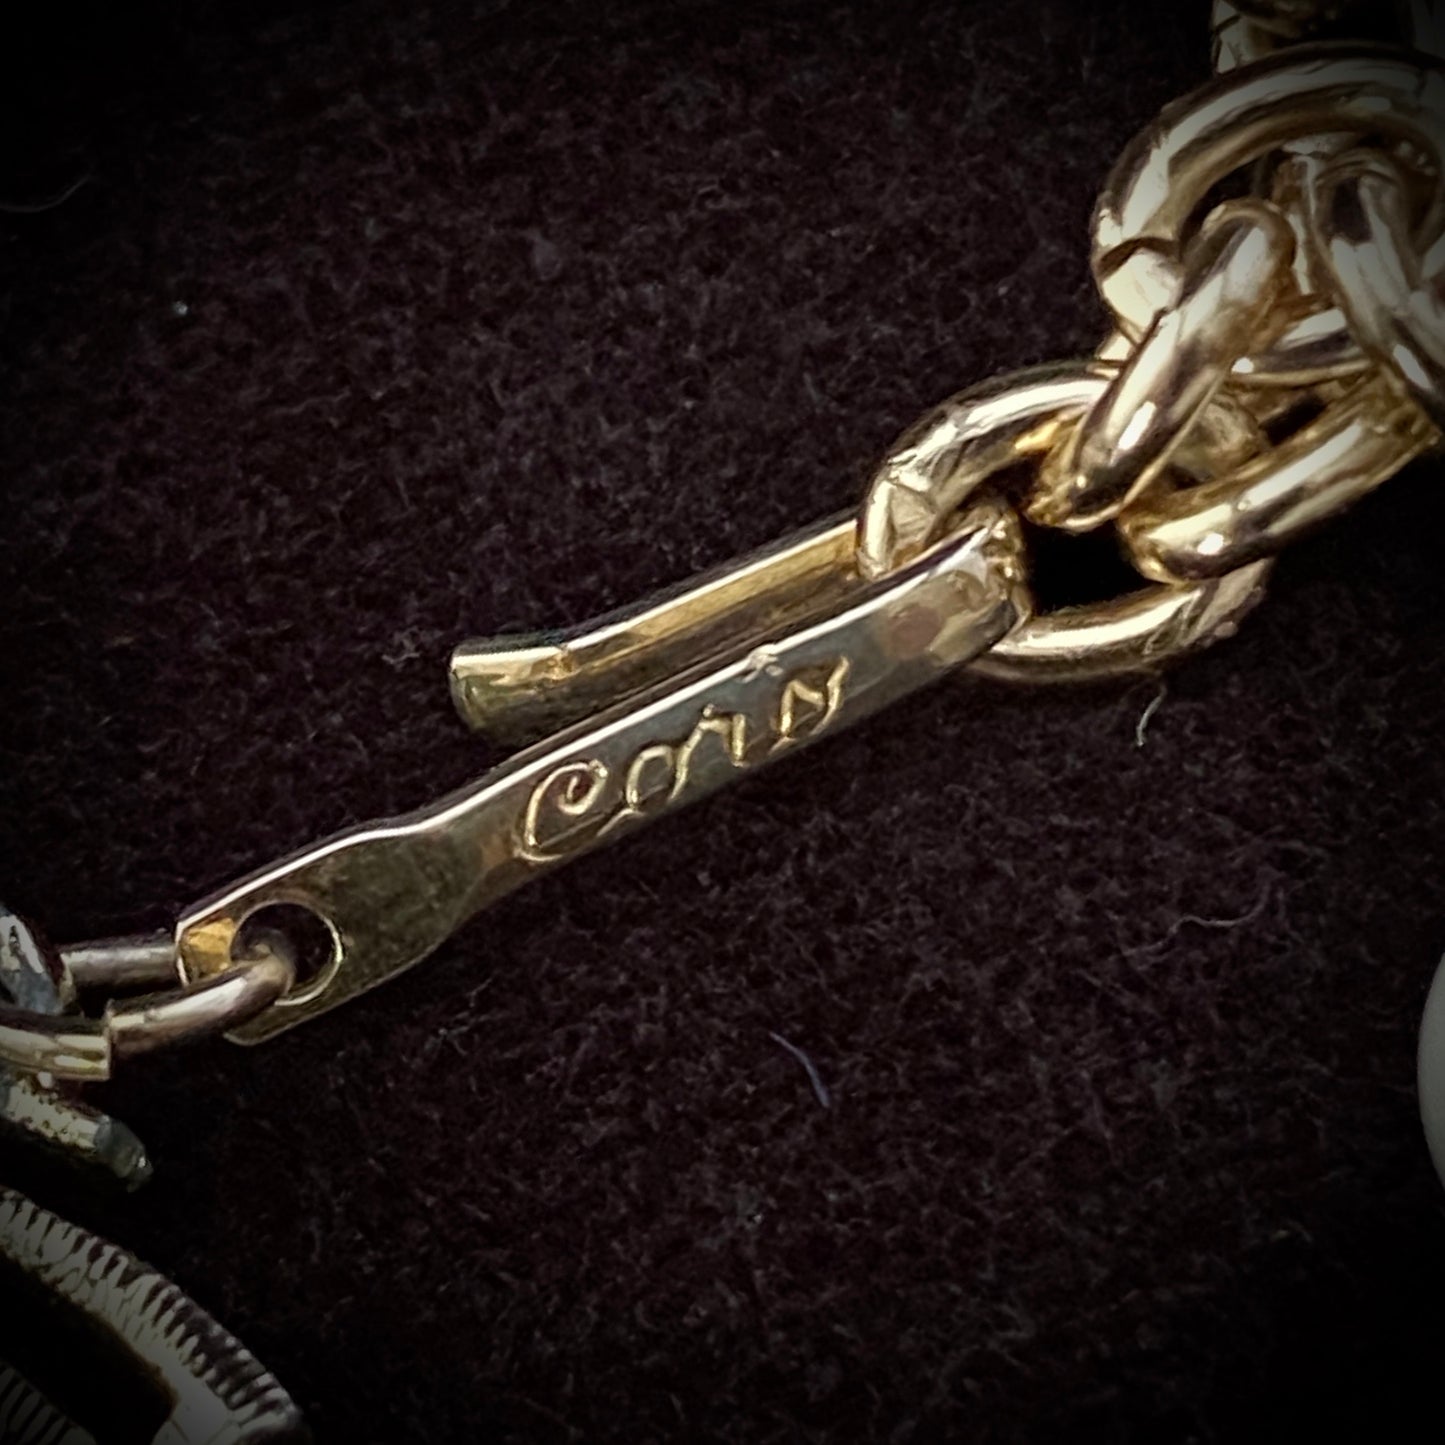 1960s Coro Graduated Necklace & Bracelet Parue - Retro Kandy Vintage